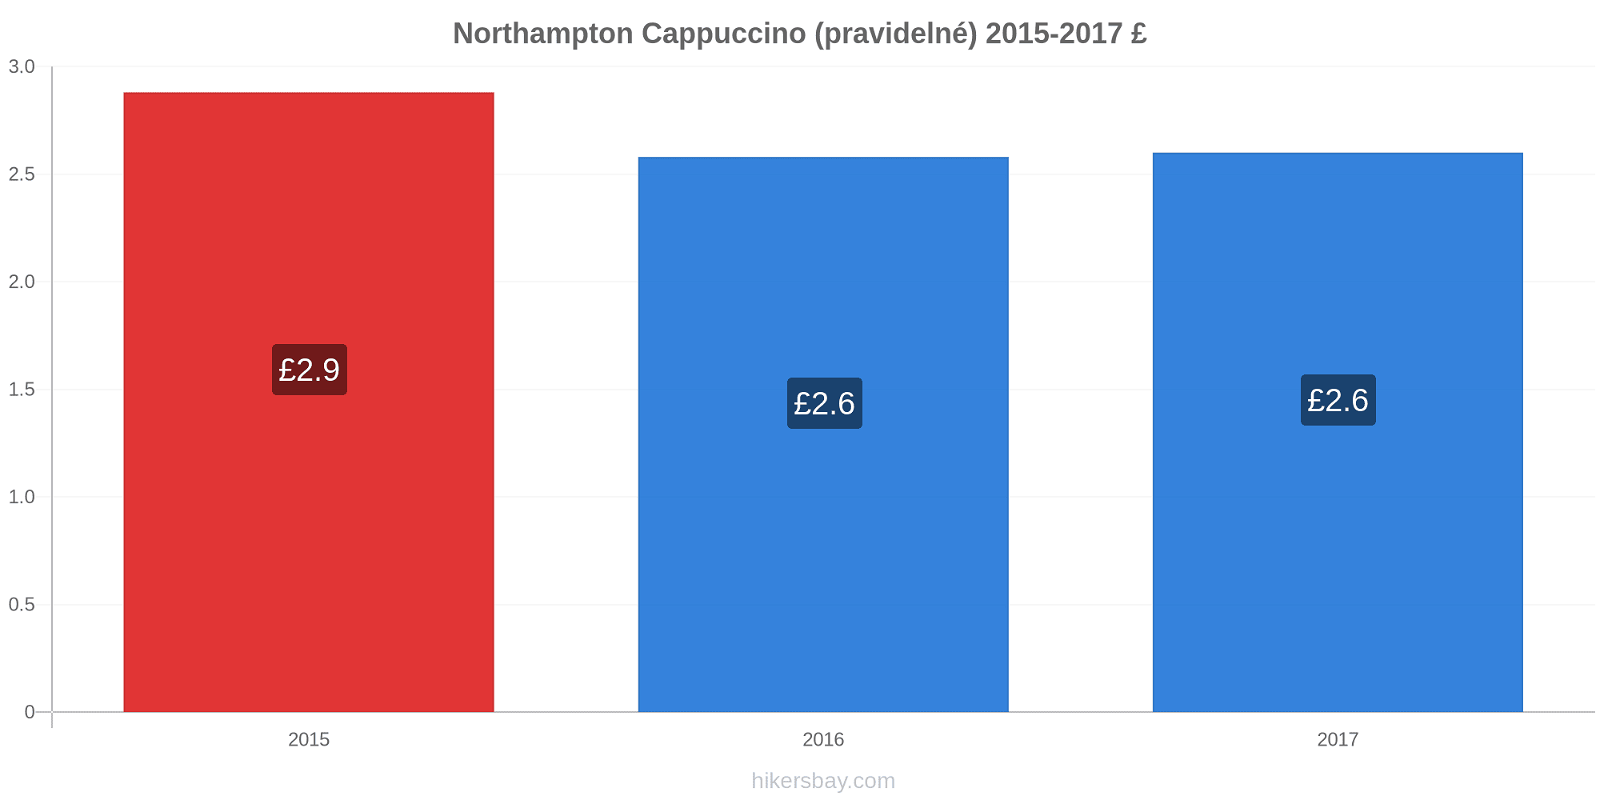 Northampton změny cen Cappuccino (pravidelné) hikersbay.com